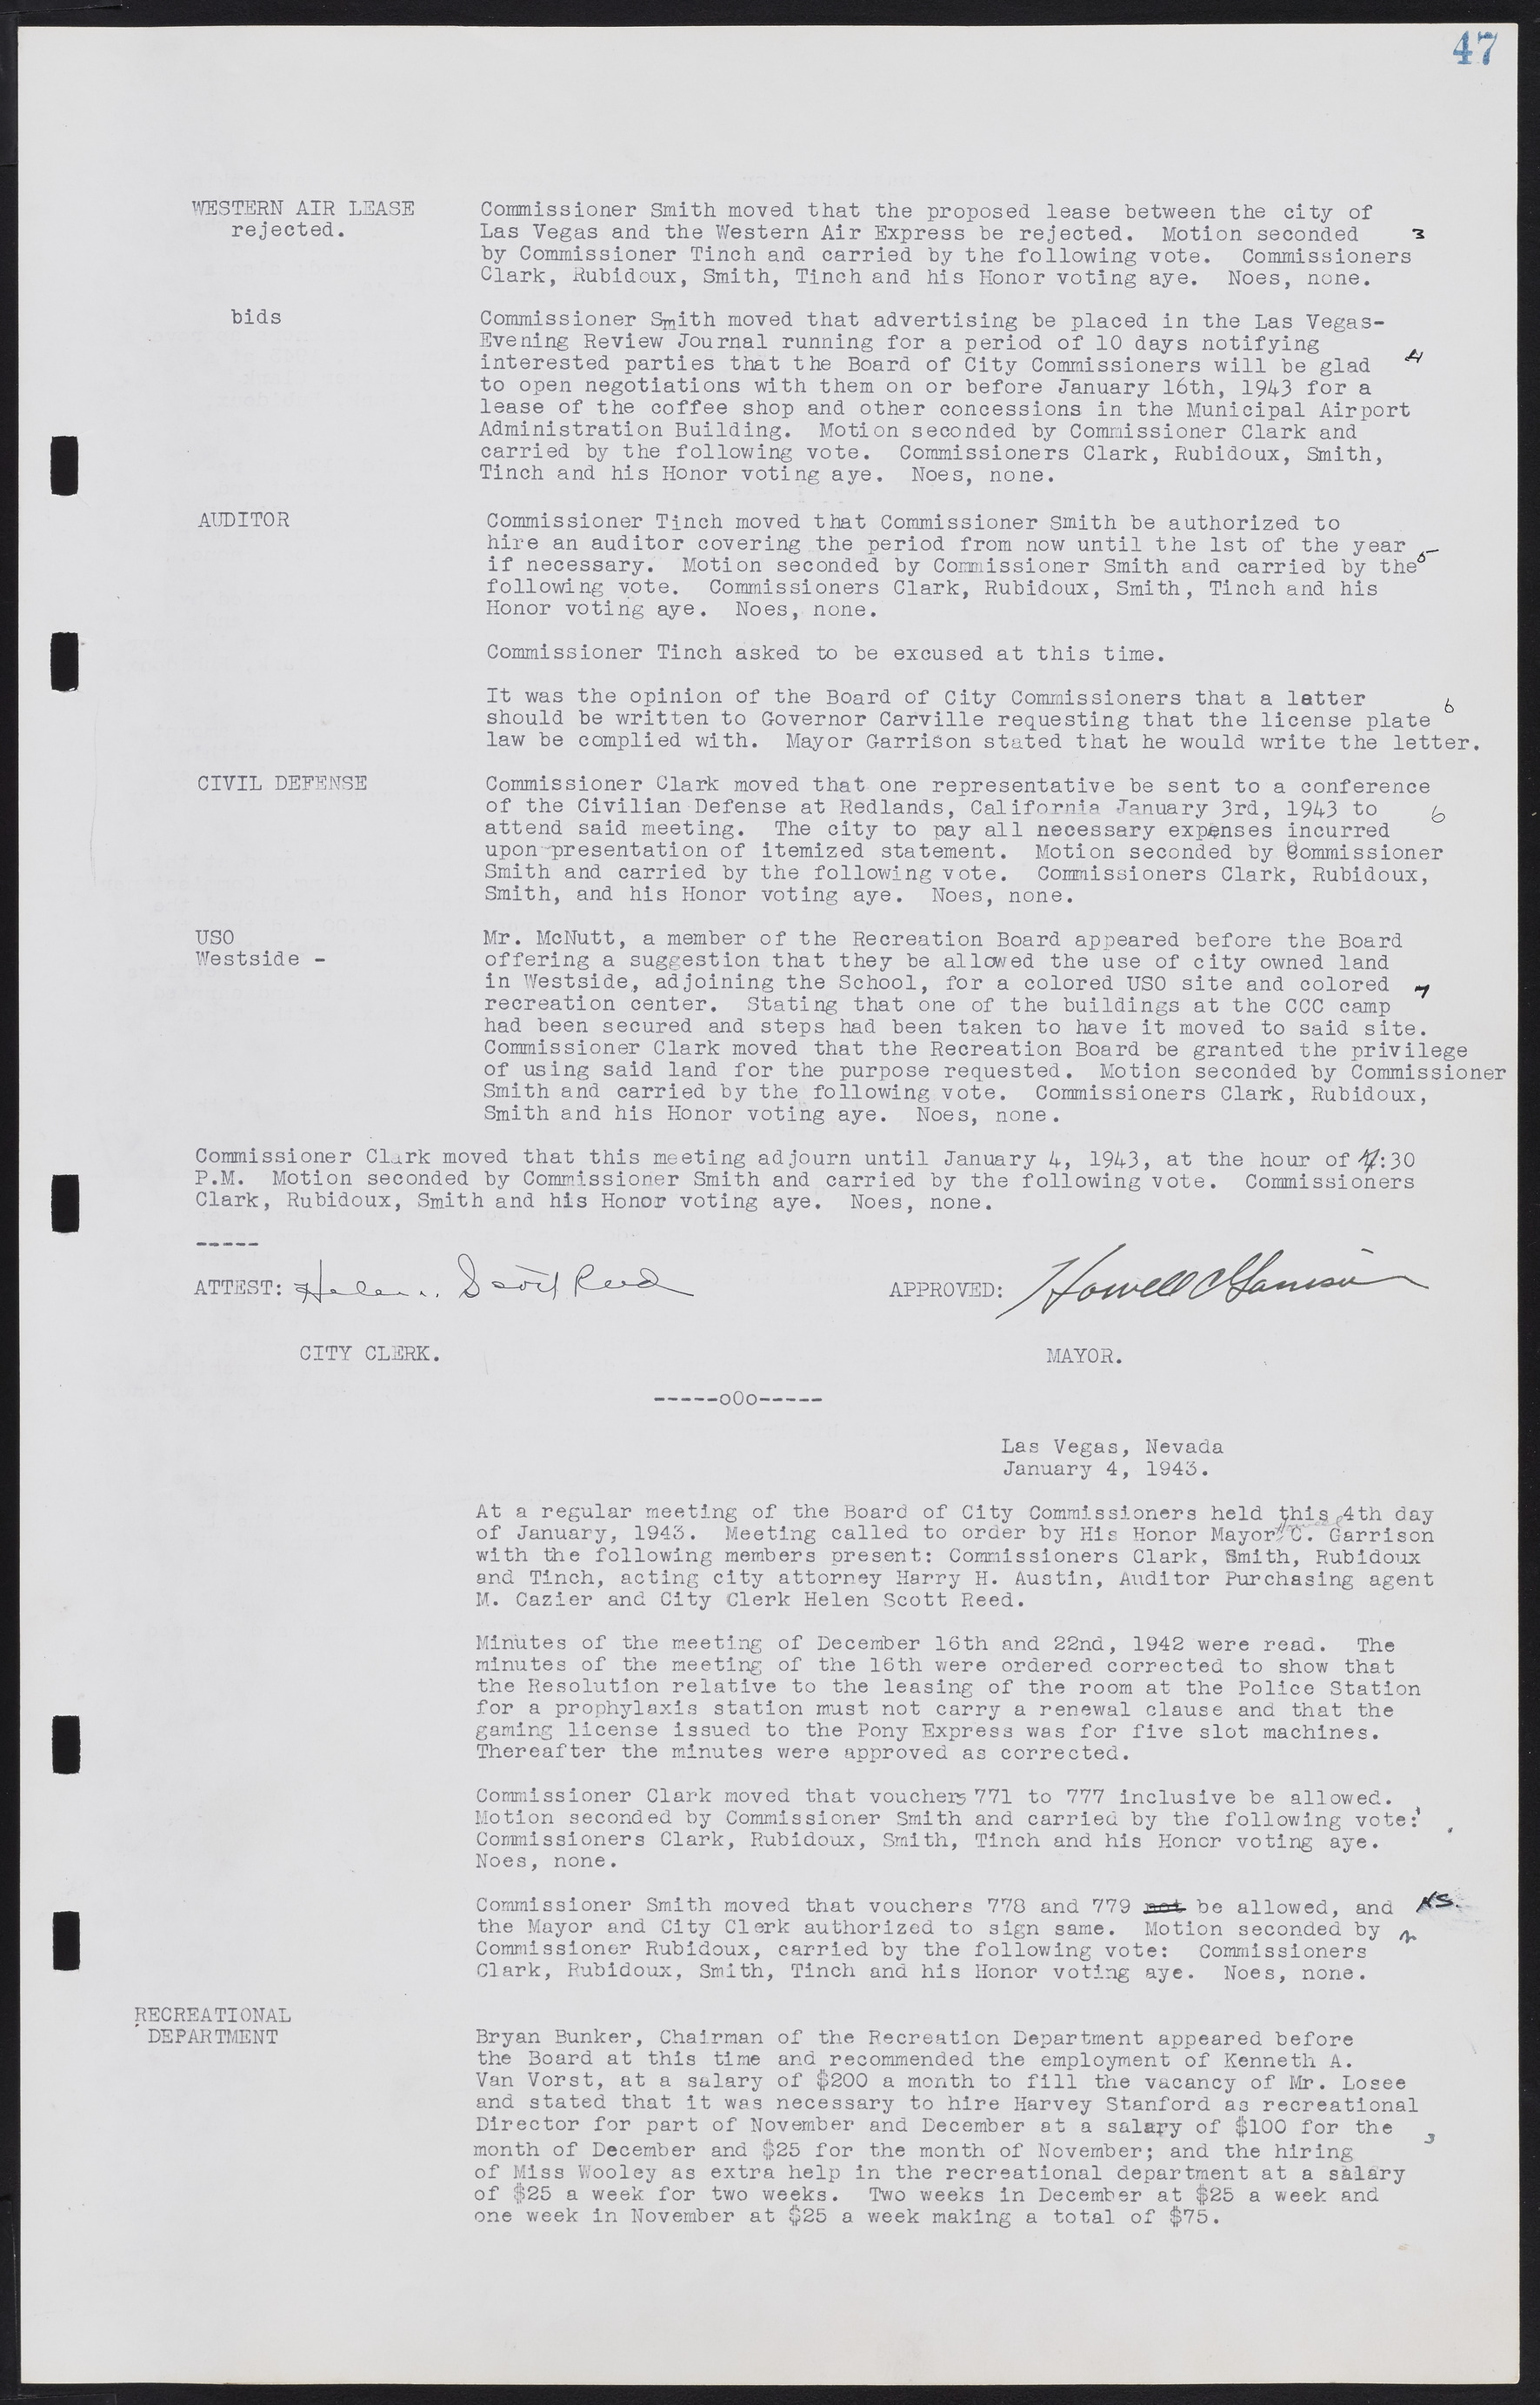 Las Vegas City Commission Minutes, August 11, 1942 to December 30, 1946, lvc000005-59